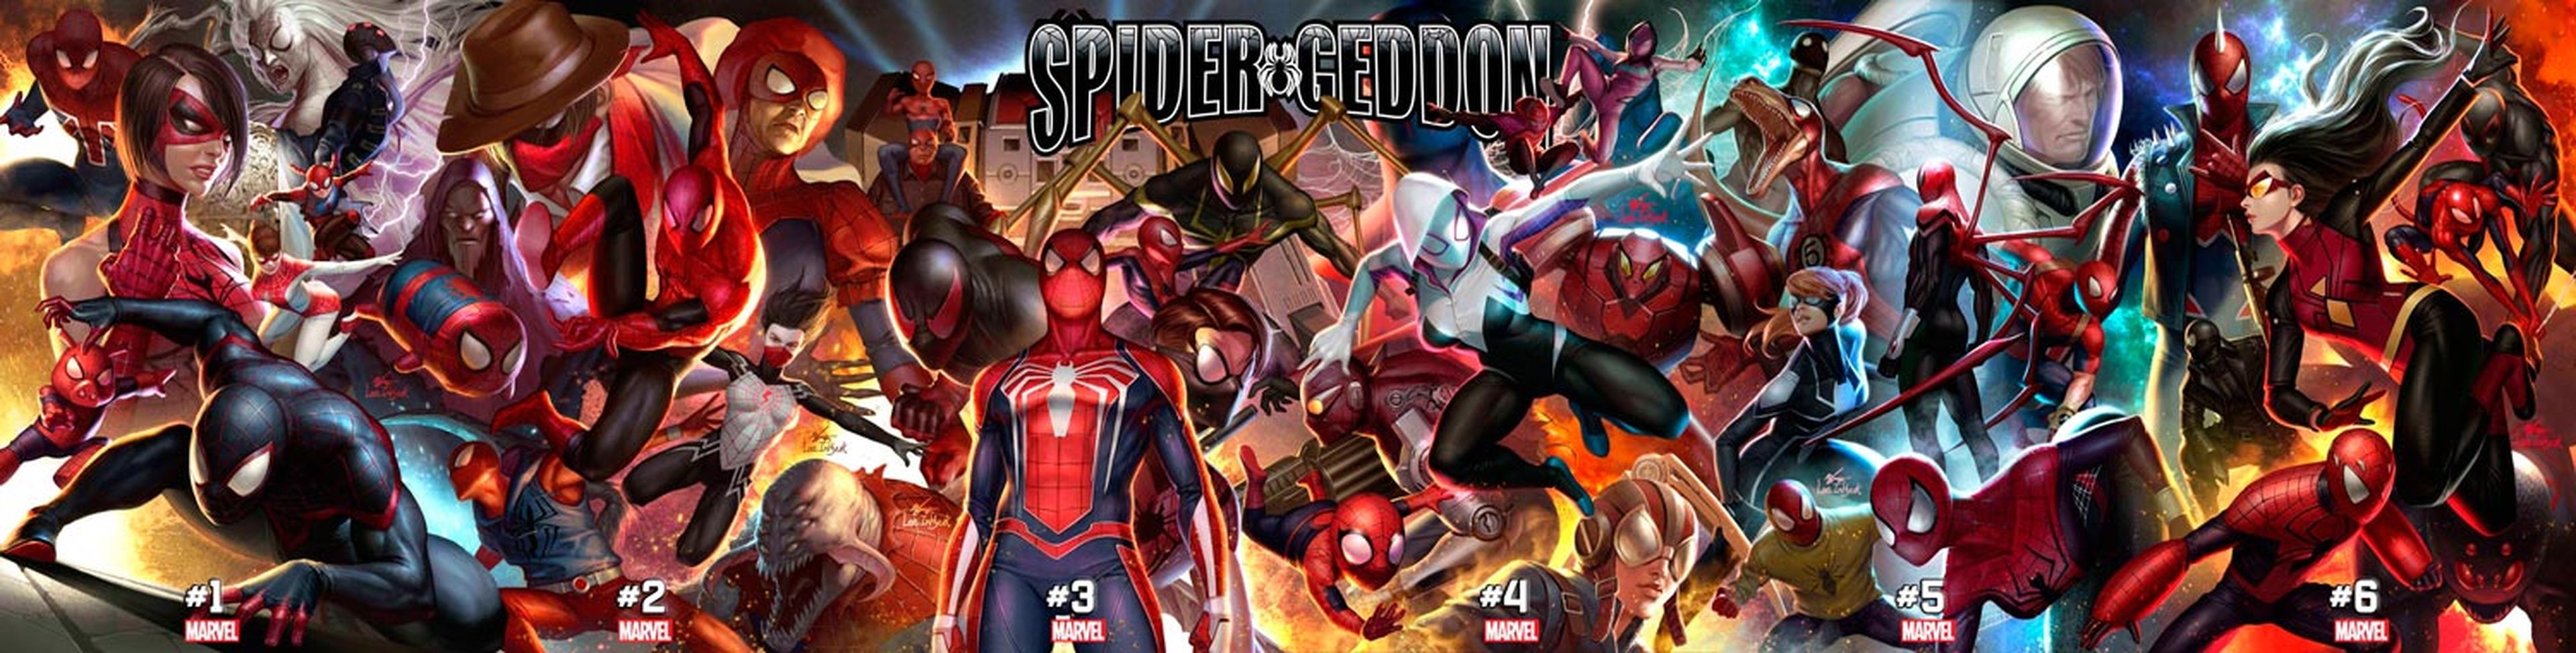 Spider-Geddon (Spidergedón) - Poster